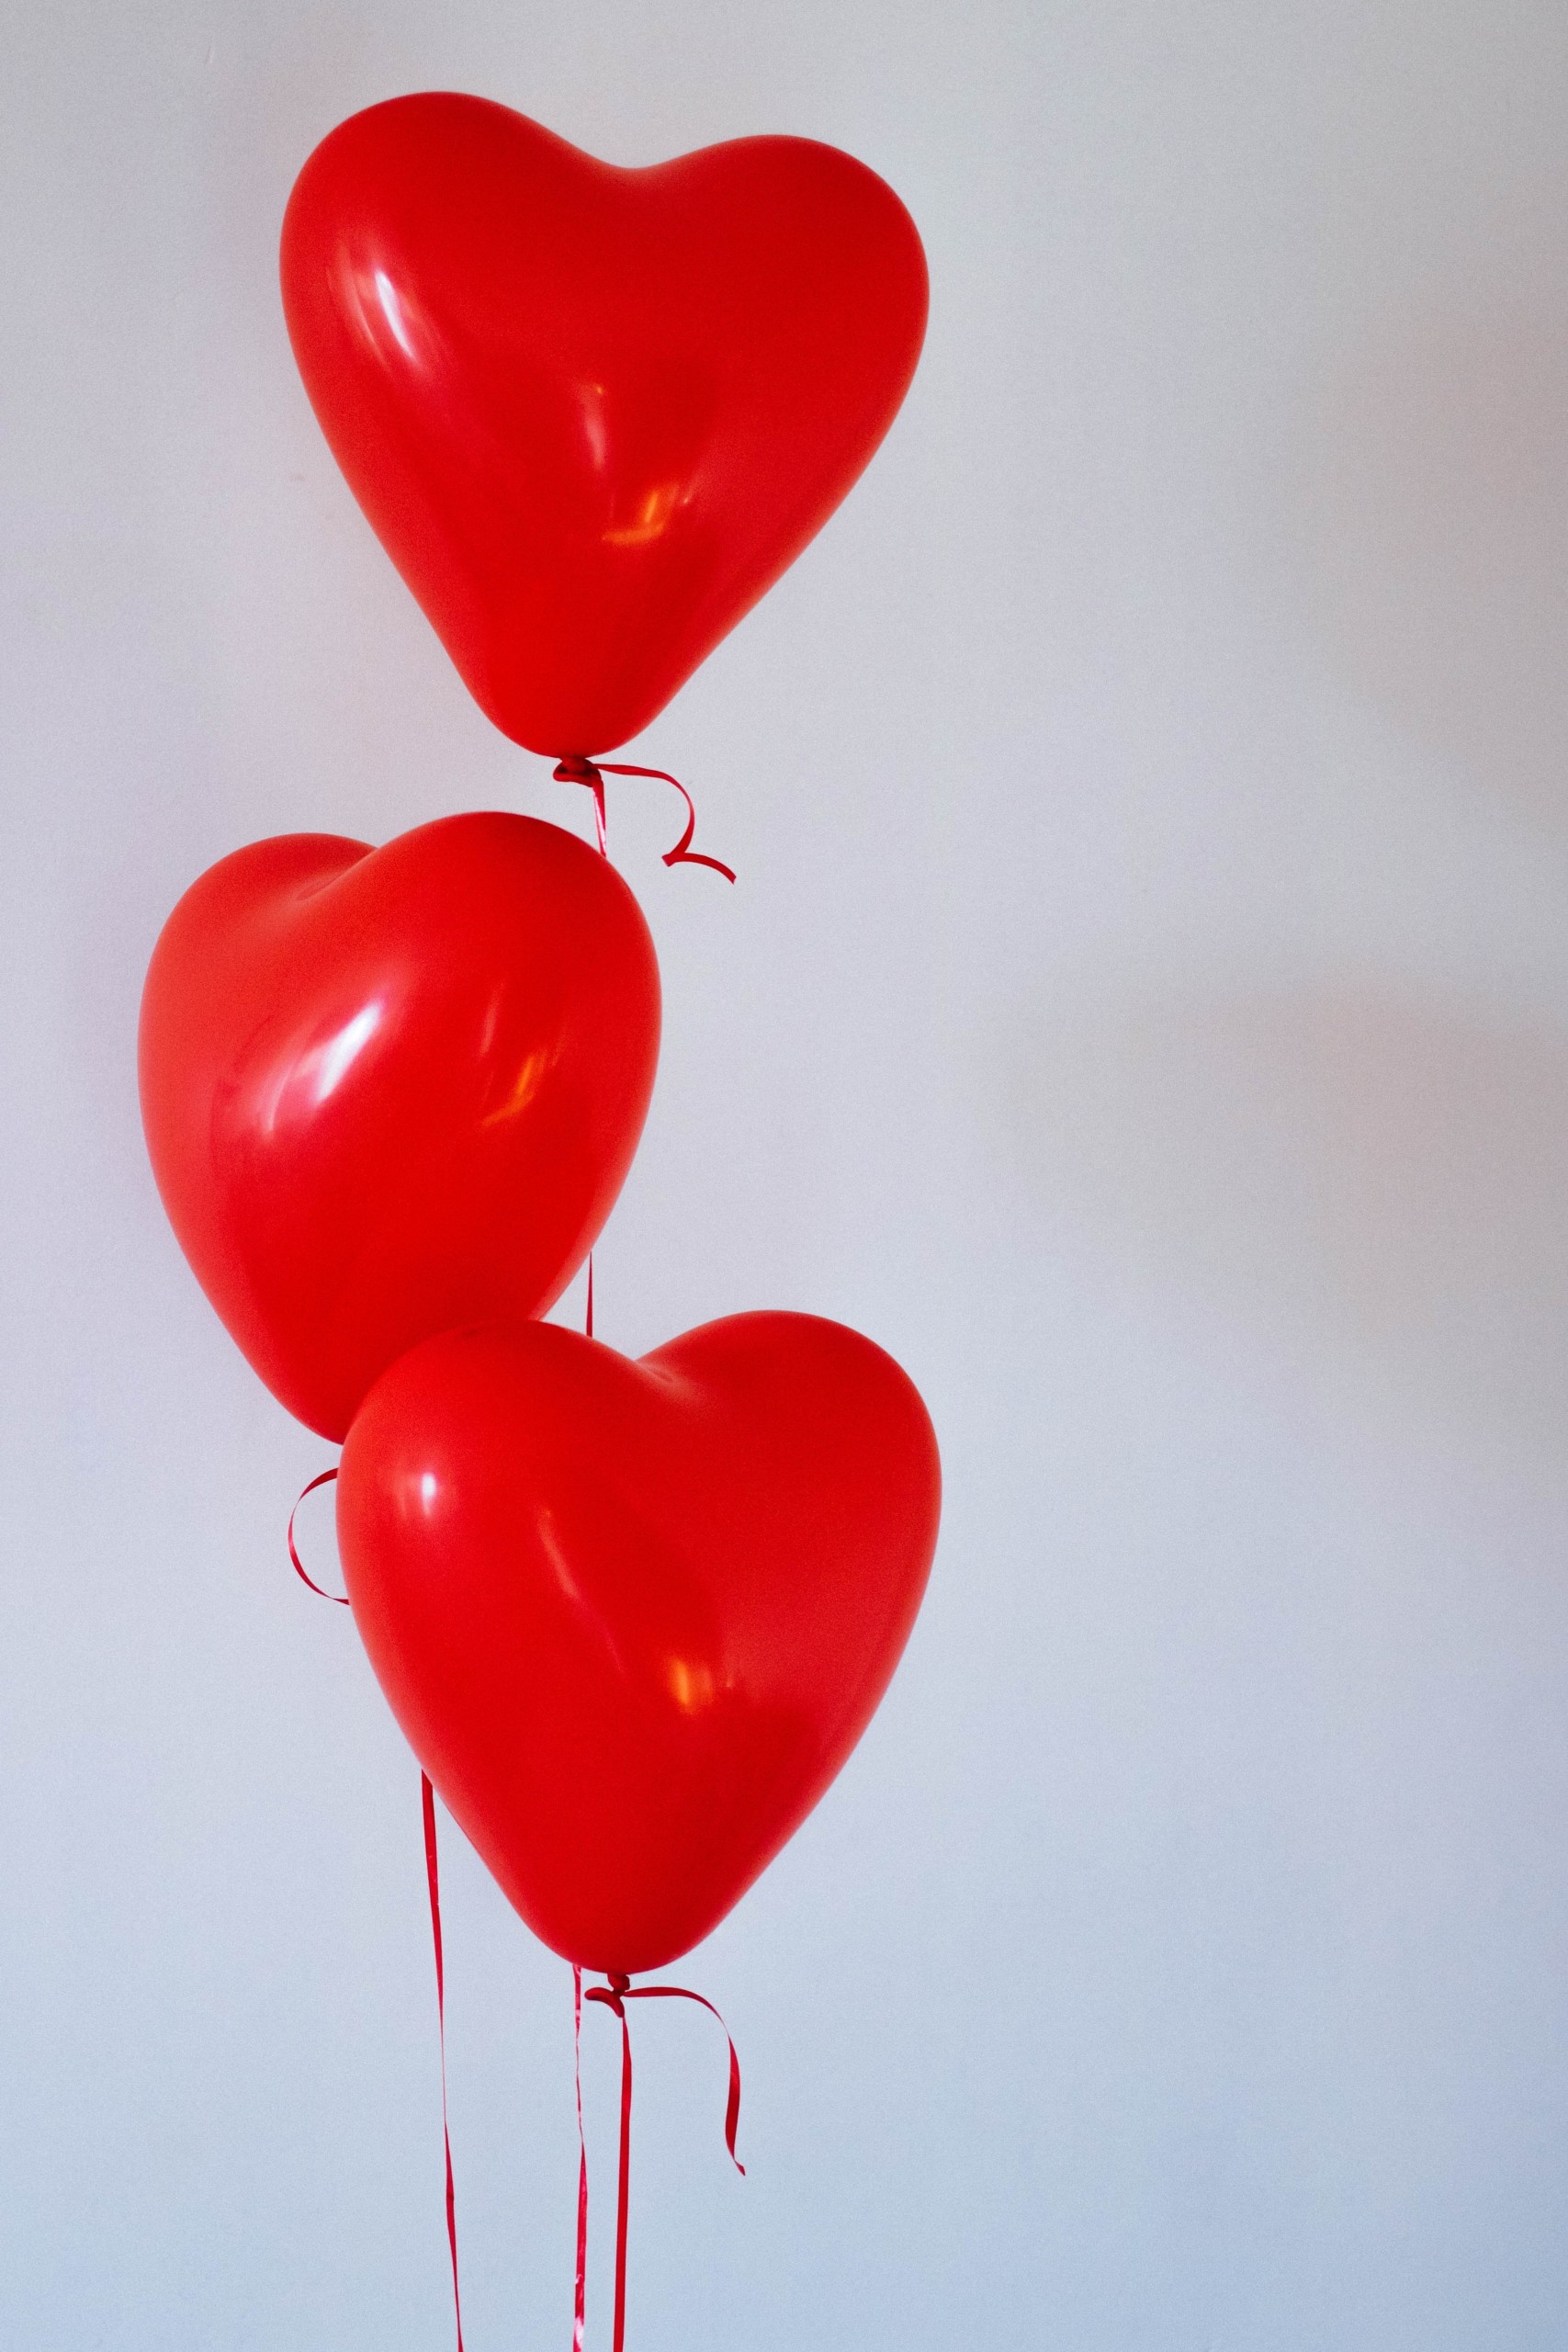 Sydämen muotoisia punaisia ilmapalloja kolmen nipussa